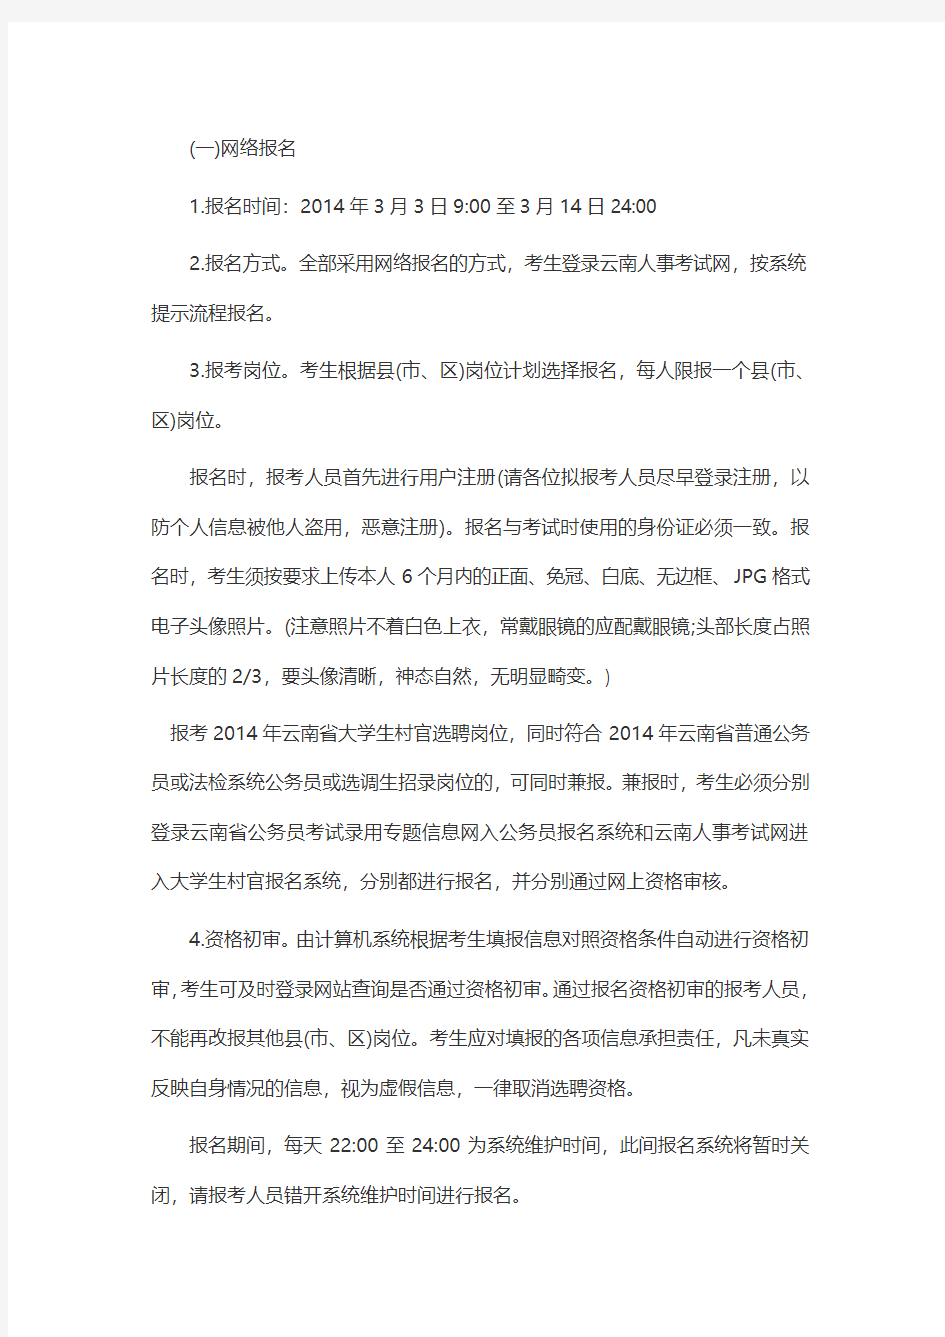 2015云南省大学生村官考试报名要求